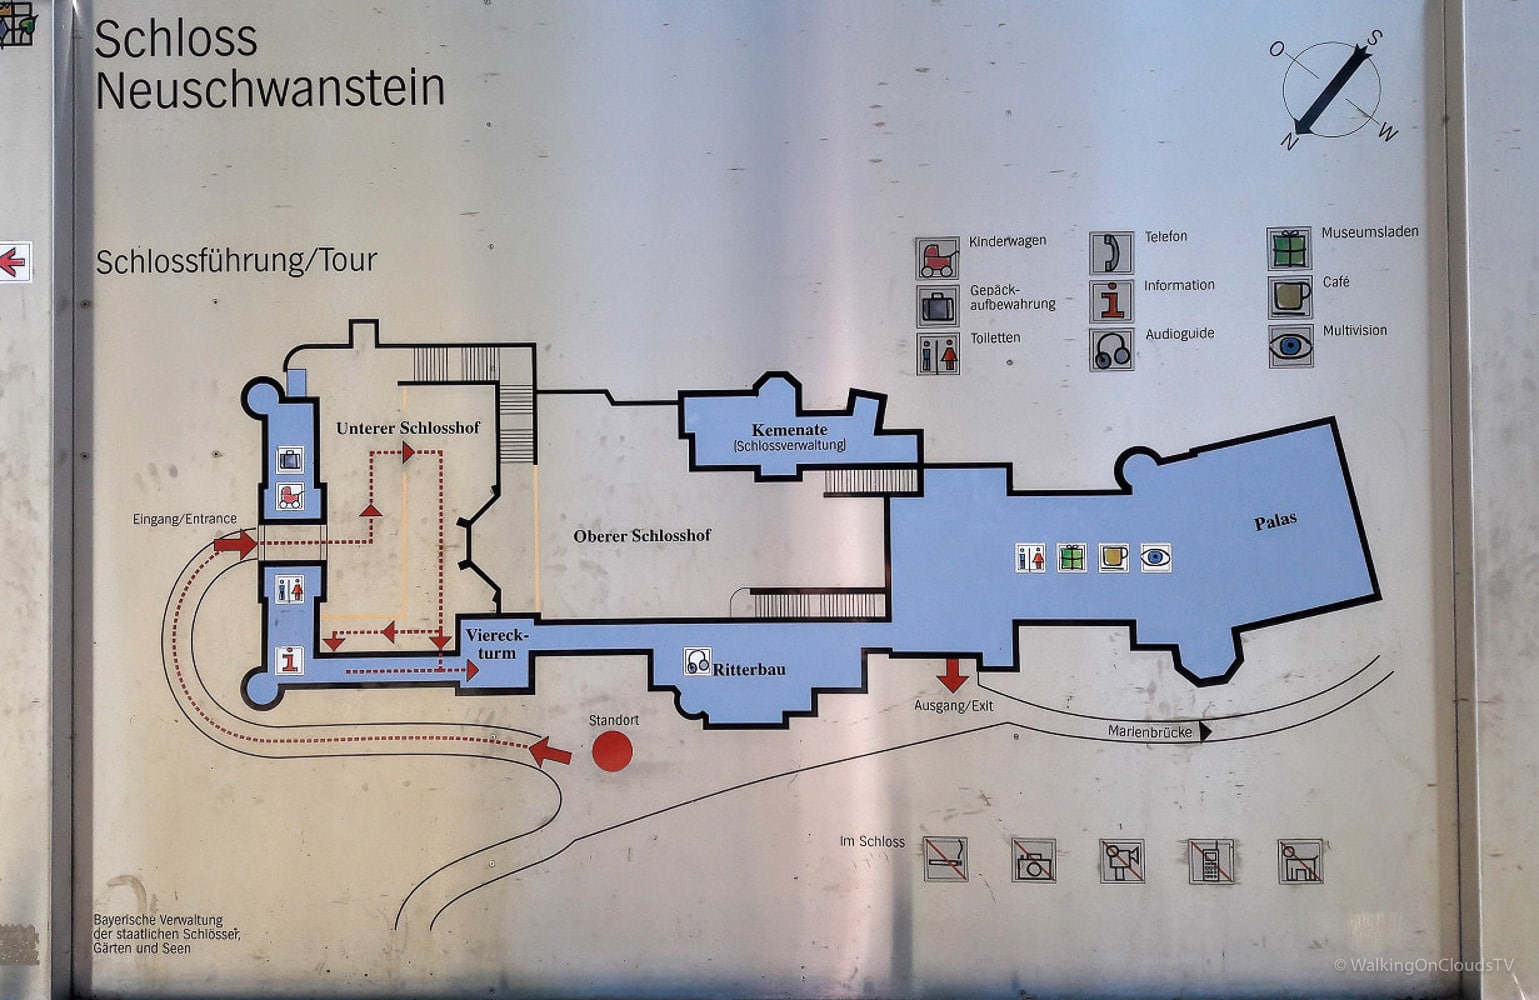 Füssen im Ostallgäu ist eine wunderschöne Region zum Wandern und Radfahren. Zudem liegen Schloss Neuschwanstein und Hohenschwangau sowie der Lechfall in direkter Nähe